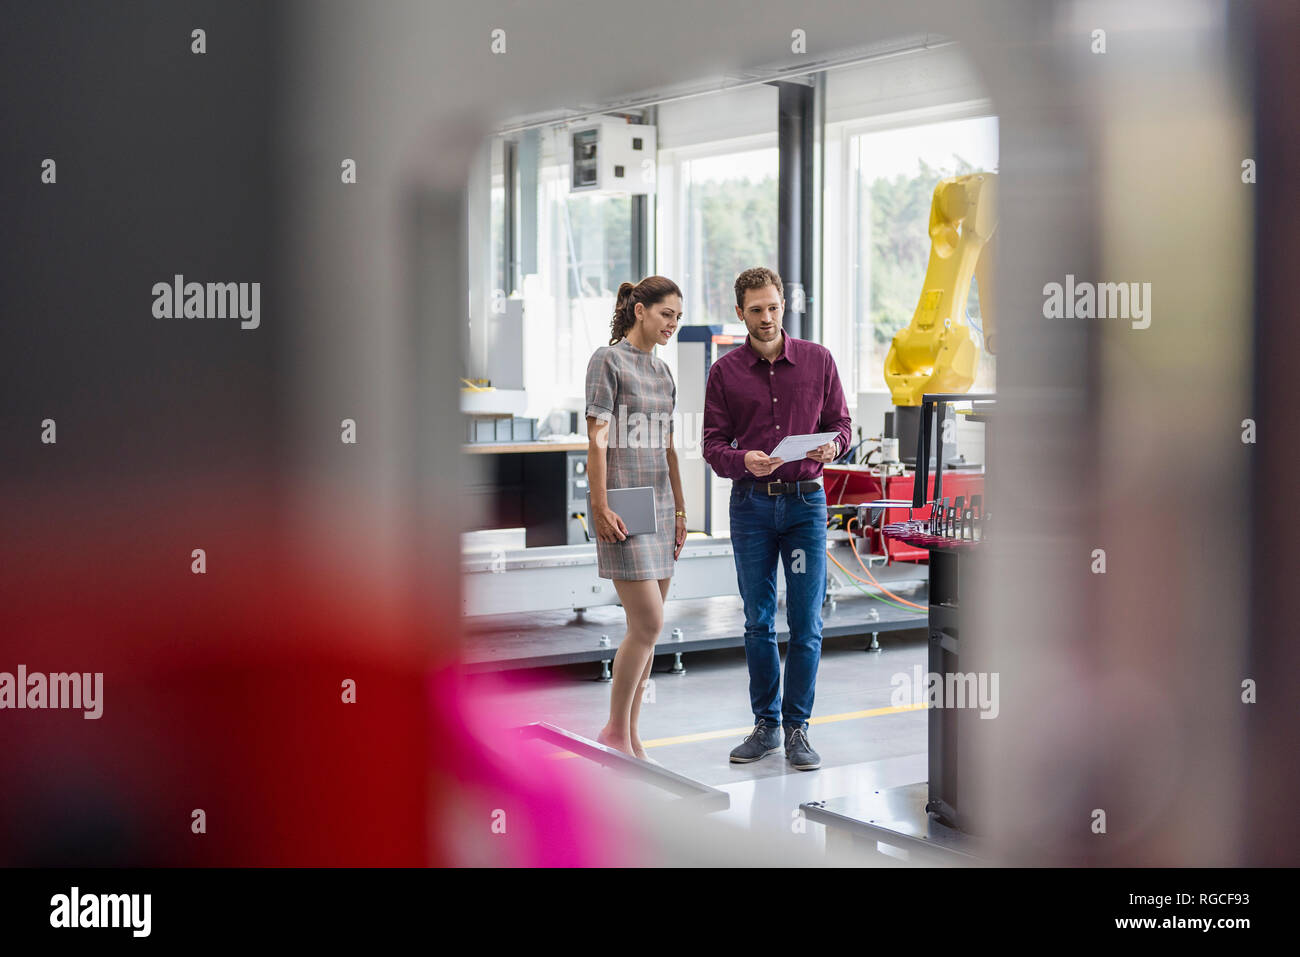 Kaufmann und Frau in einer Sitzung vor Industrieroboter in einem High-Tech-Unternehmen Stockfoto